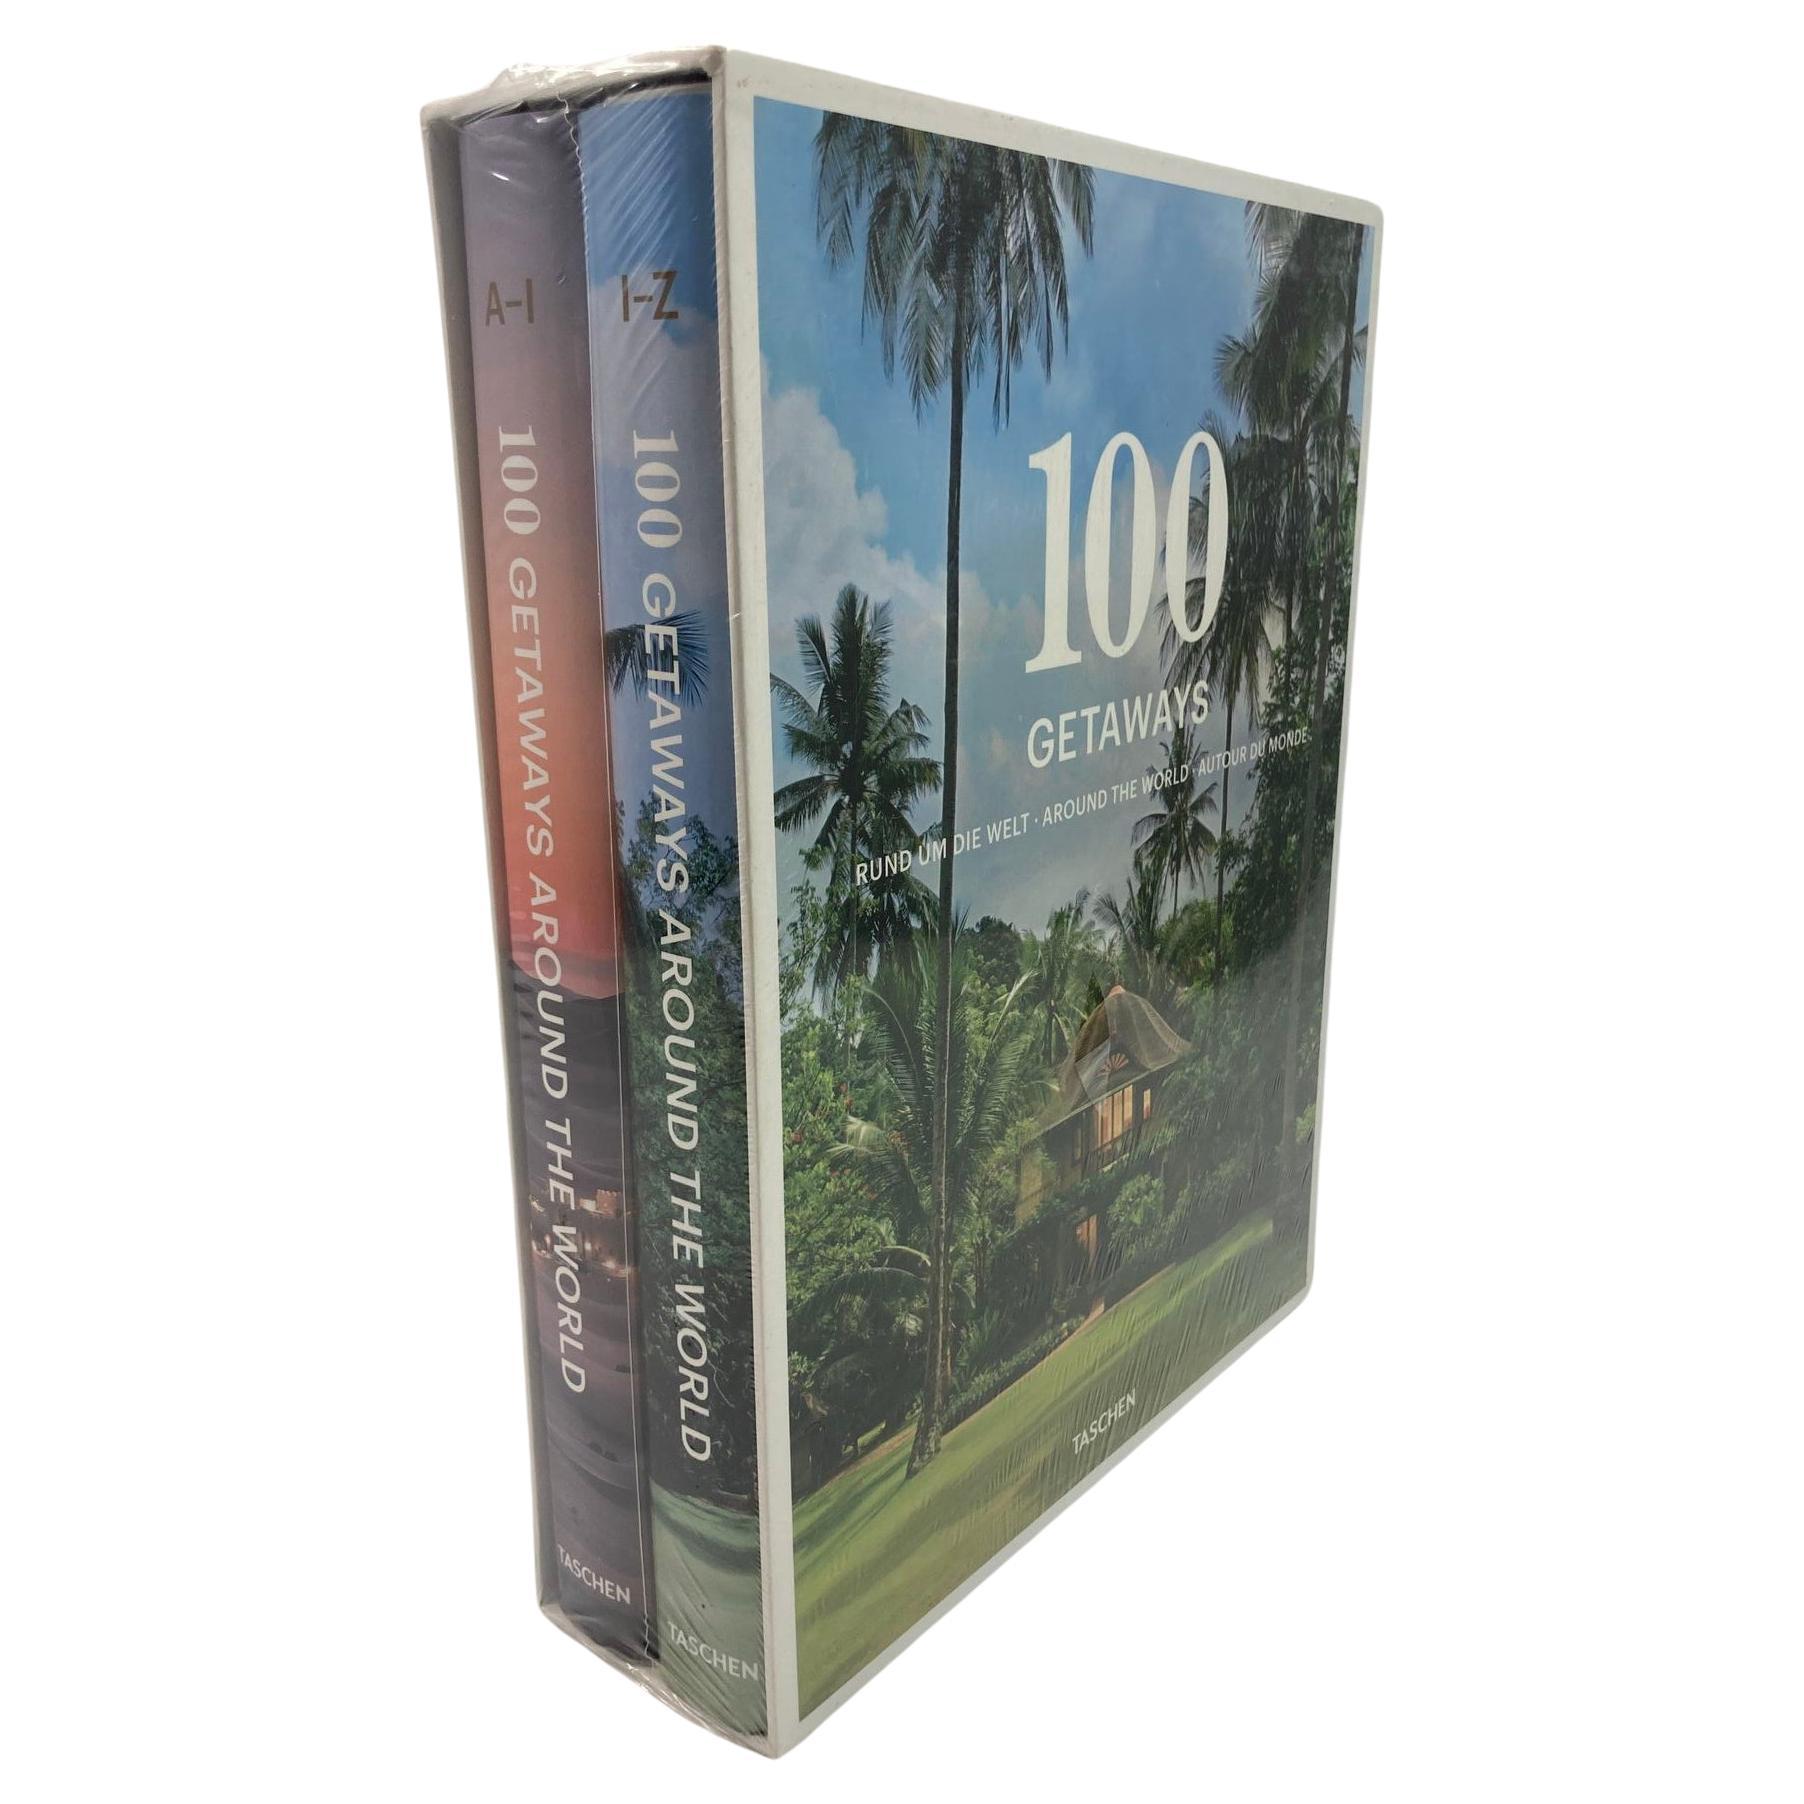 100 Getaways Around the World von Margit J. Mayer TASCHEN, Hardcover 2014